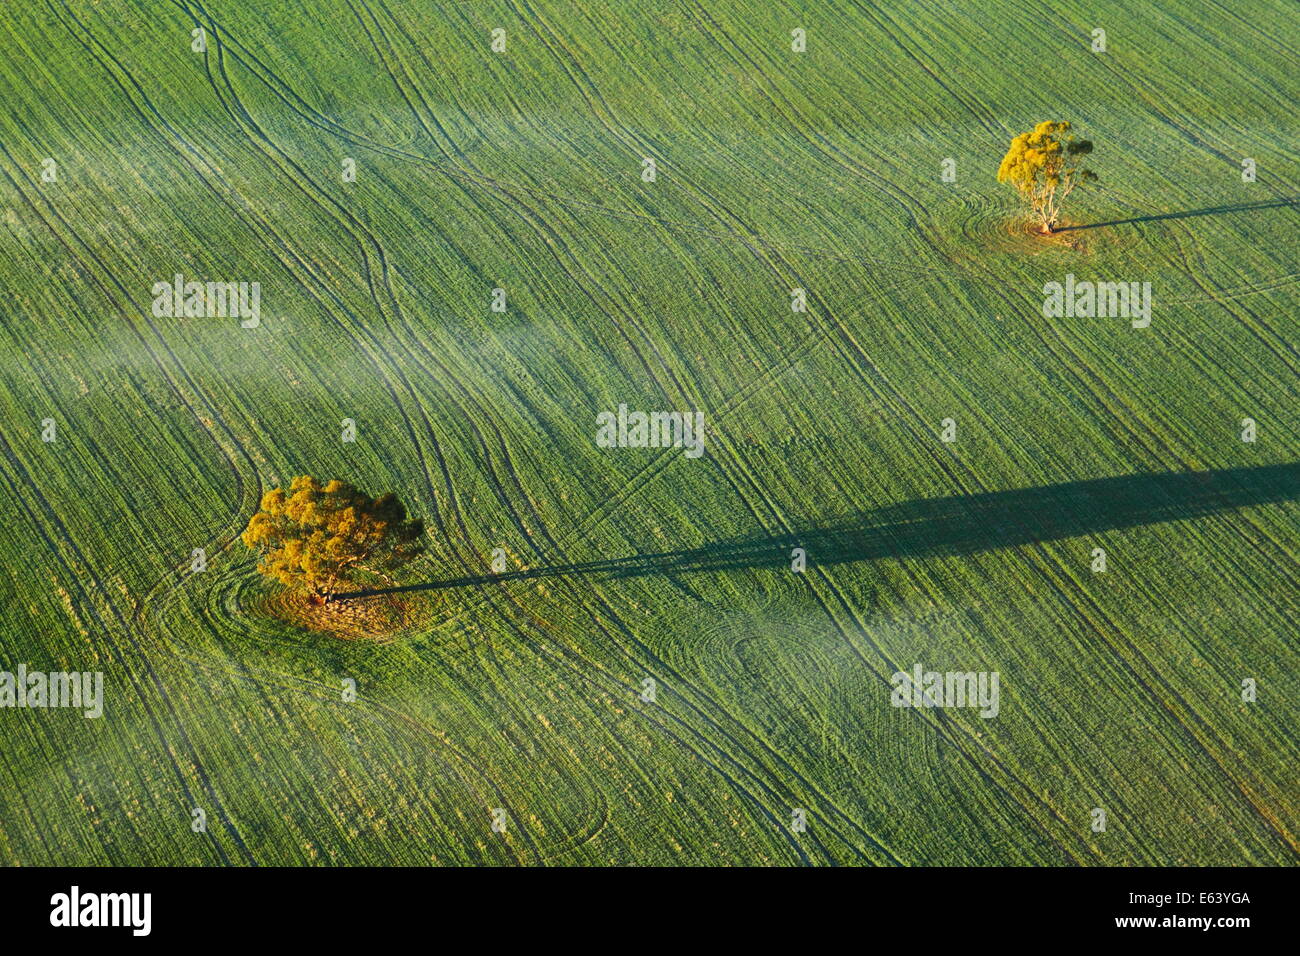 Ein paar Bäume werfen einen Schatten auf eine Ernte von Weizen, betrachtet aus einem Heißluftballon in der Nähe von Northam, Avon Valley, Western Australia. Stockfoto